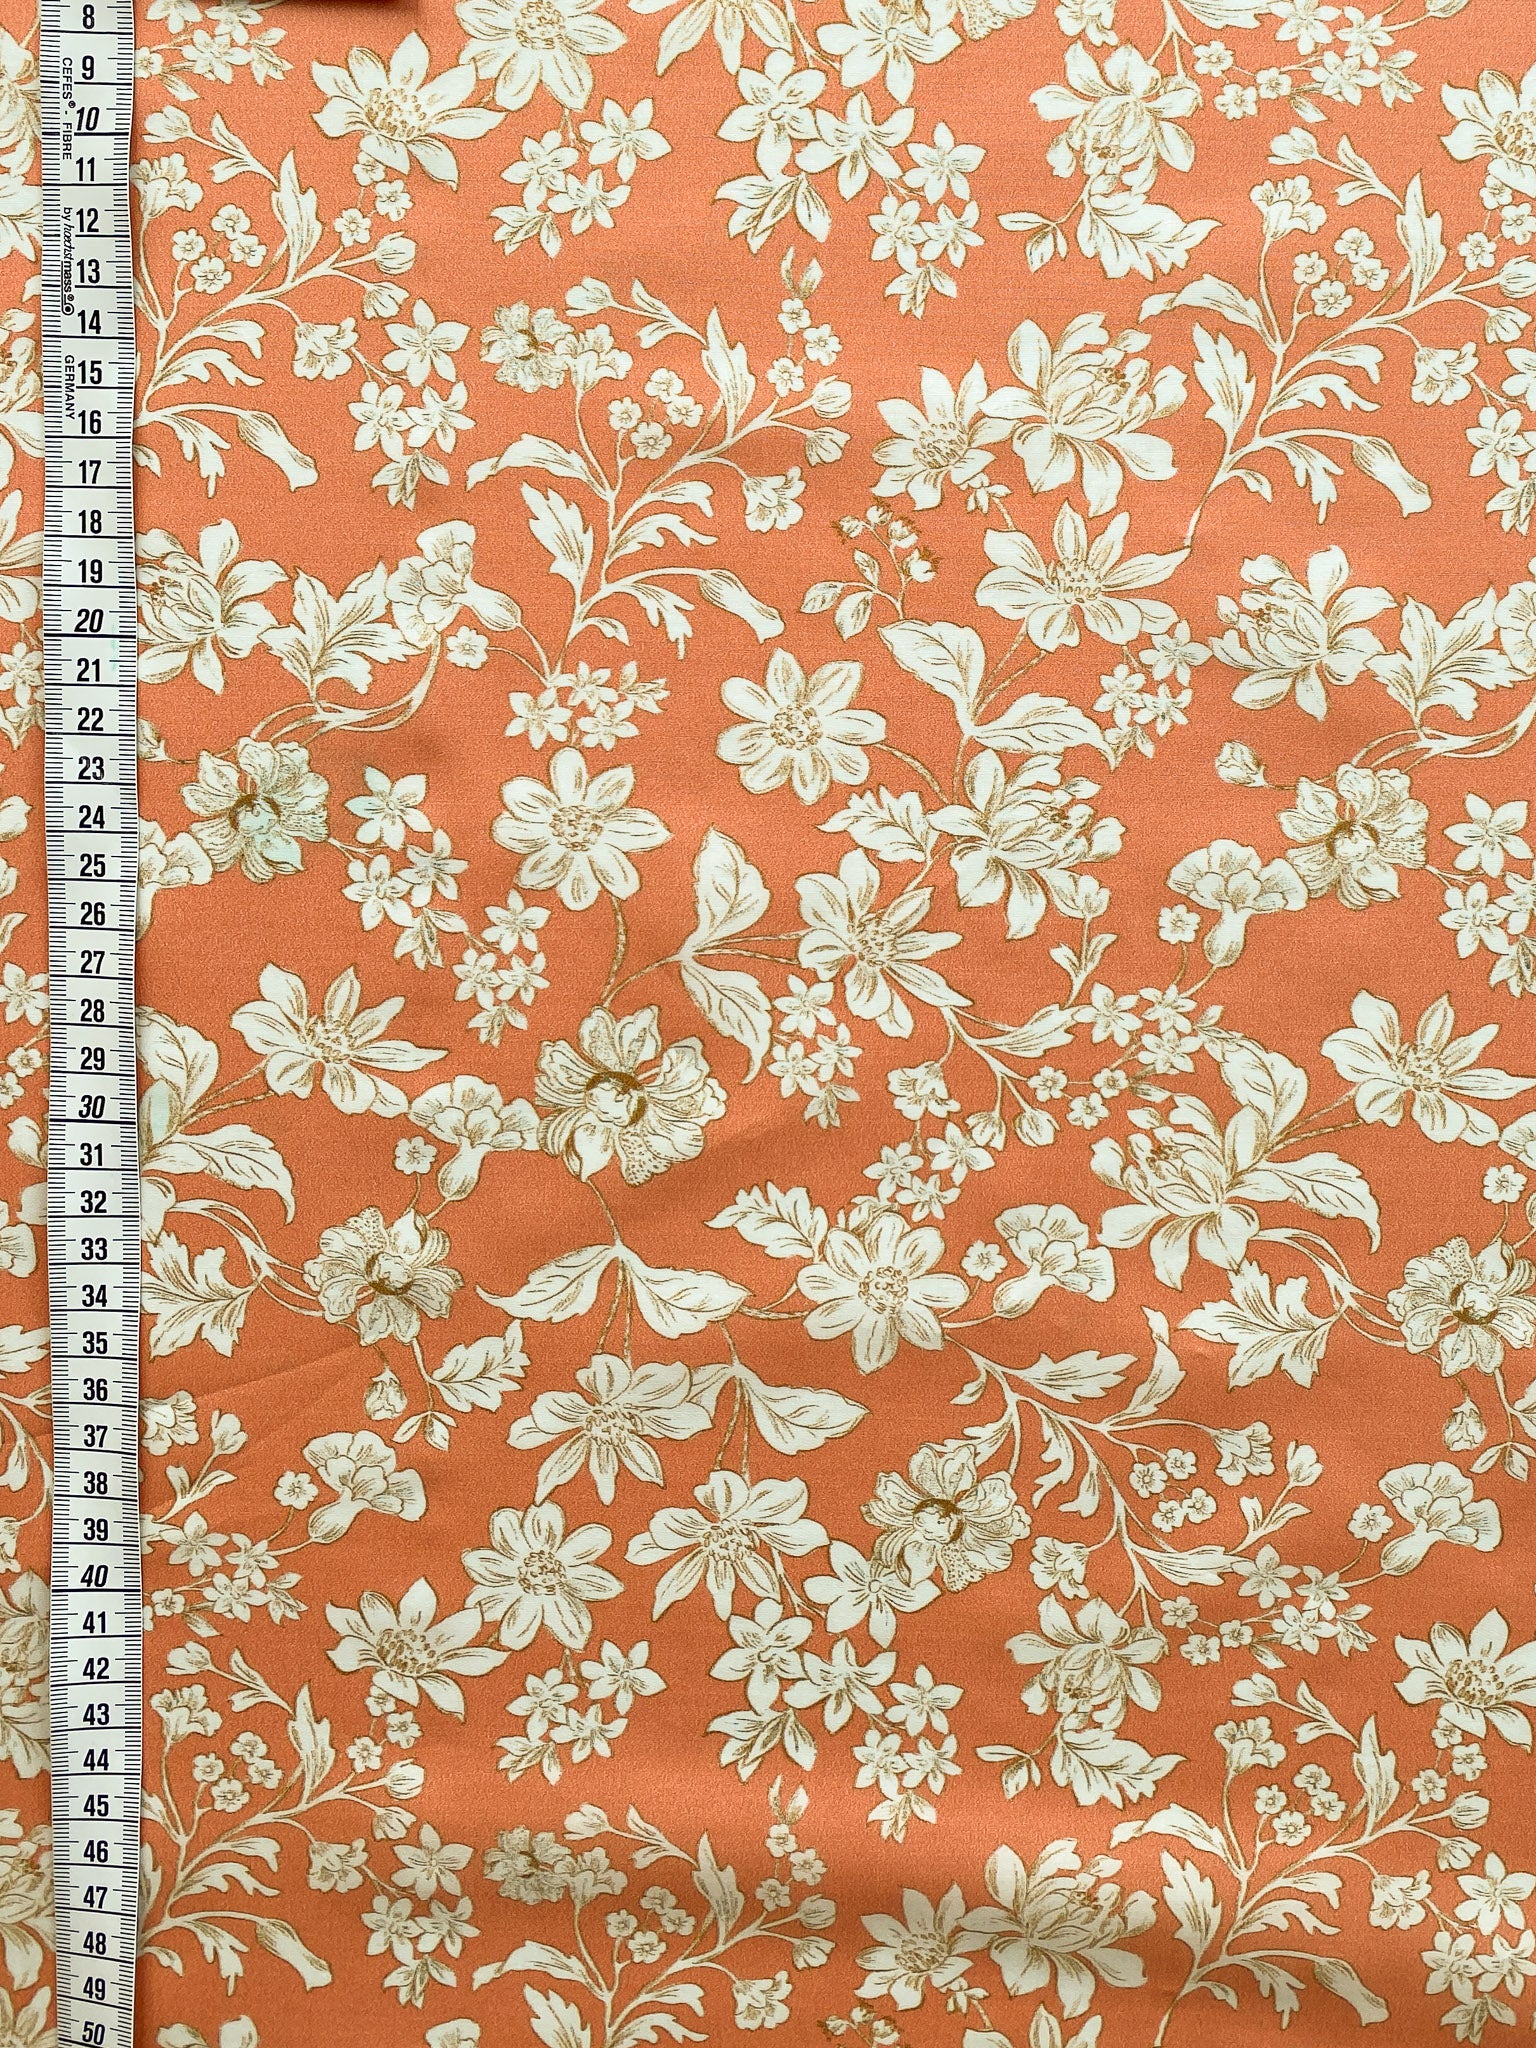 No. 123 cotton floral print